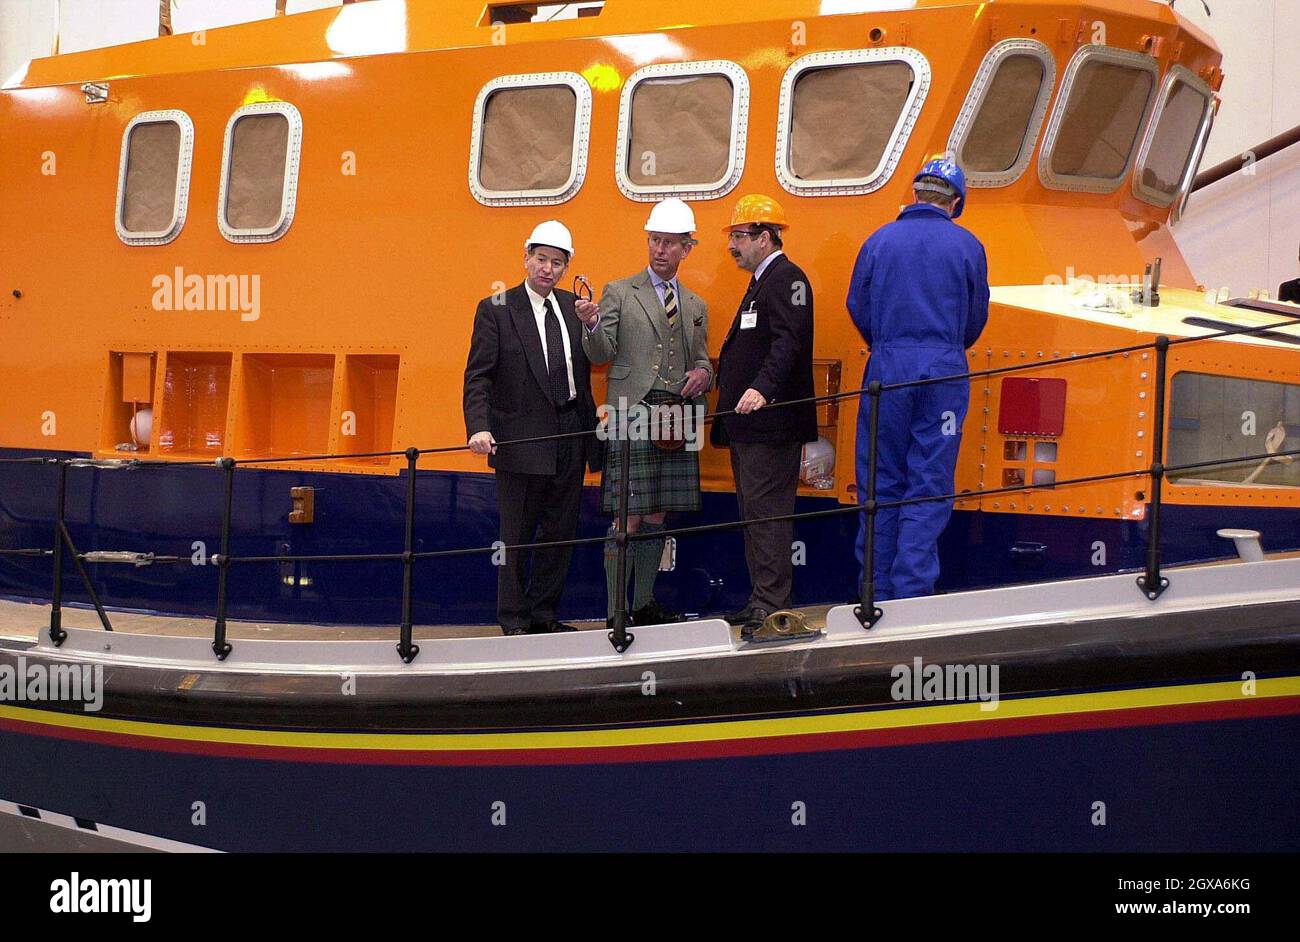 Der Prinz von Wales (Charles), der Herzog von Rothsey bei den Buckie Shipyards, Banffshire, stand mit Buckie Shipyards Chief Executive Bill Carson (L) und Andrew Redden von der R.N.L.B.(R) an Bord der Mallaig R.N.L.B. dem Prinzen wurde erzählt, wie sich das Geschäft in den letzten zehn Jahren verändert hatte. Der Großteil des Auftragsbuchs wird nun mit der Reparatur und dem Umbau von Rettungsbooten für die Royal National Lifeboat Institution, deren Schirmherrin die Queen ist, aufgenommen. Stockfoto